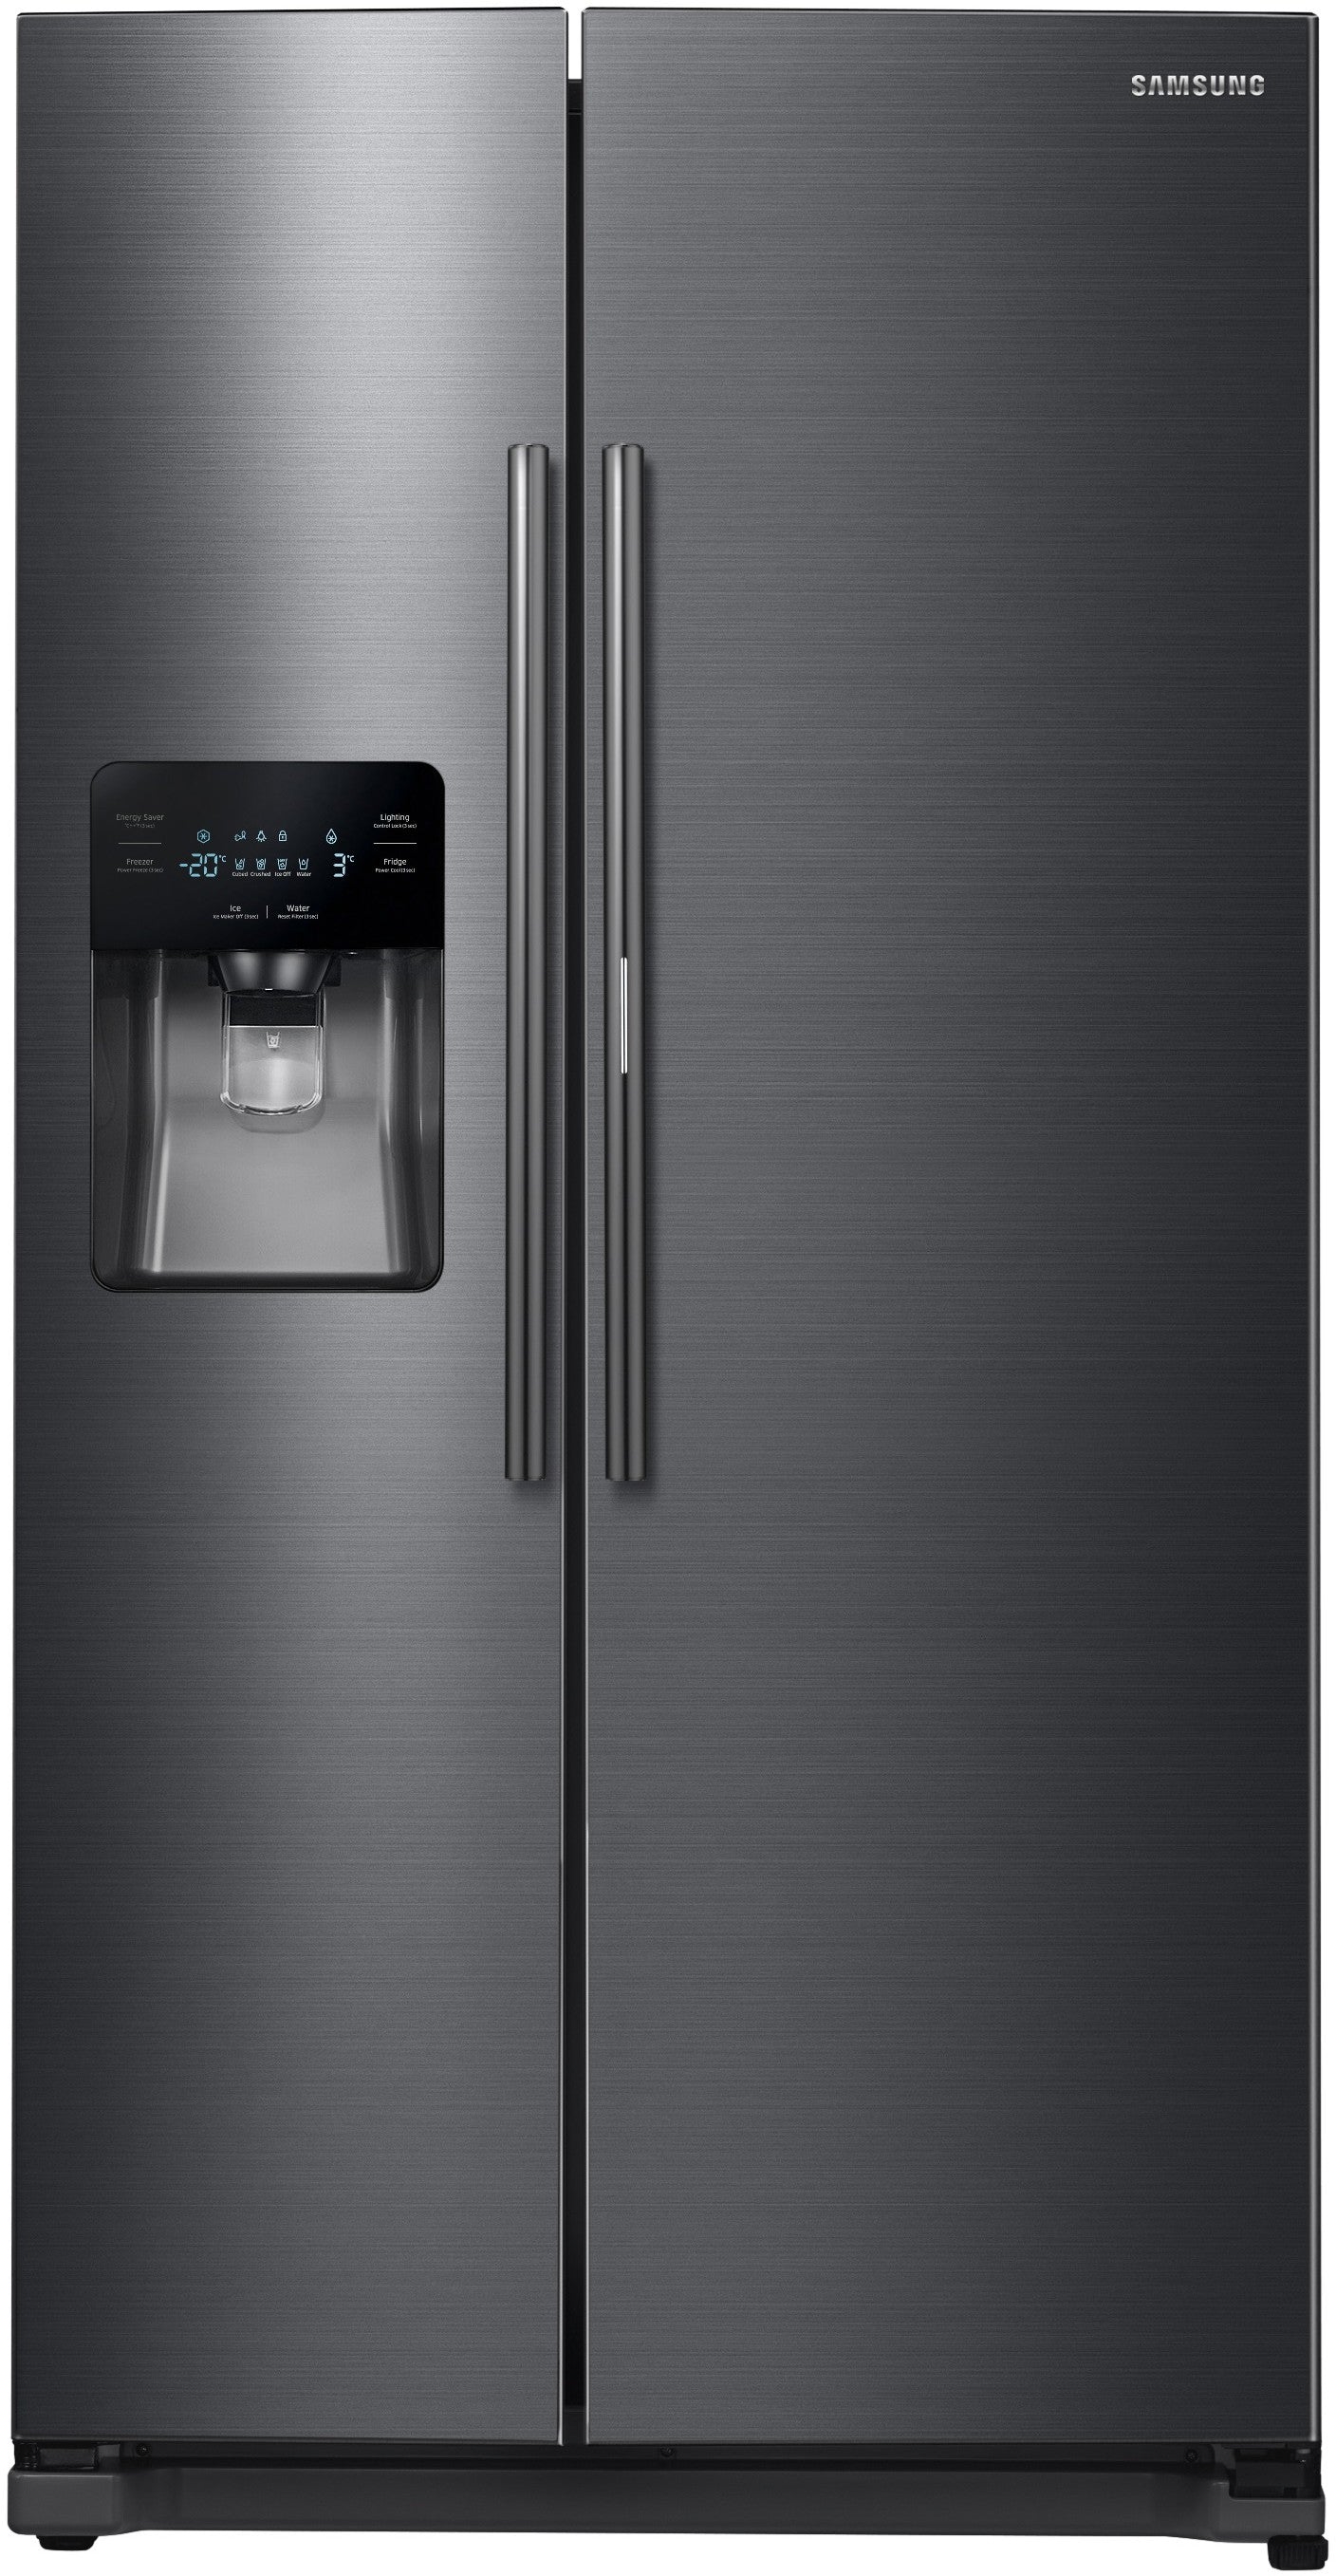 Samsung RH25H5611SG/AA 24.7 Cu. Ft. Side-by-side Refrigerator